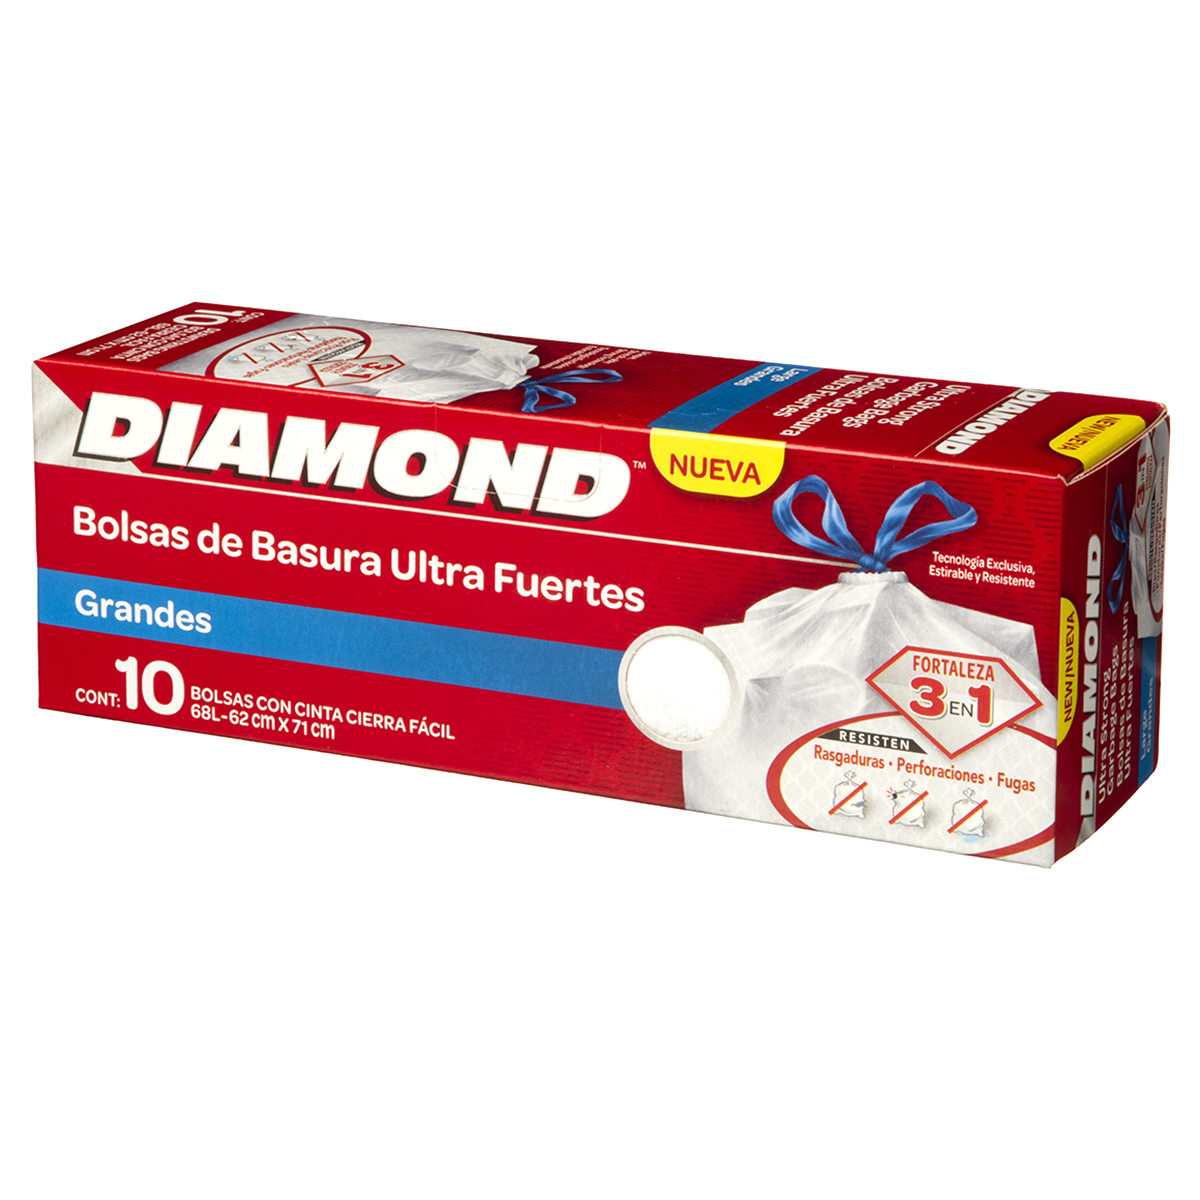 Bolsa de basura de comunidad extra fuerte premium diamond 85x105 (95  litros) - Pack de 10 bolsas - Grup Berca Distribucions